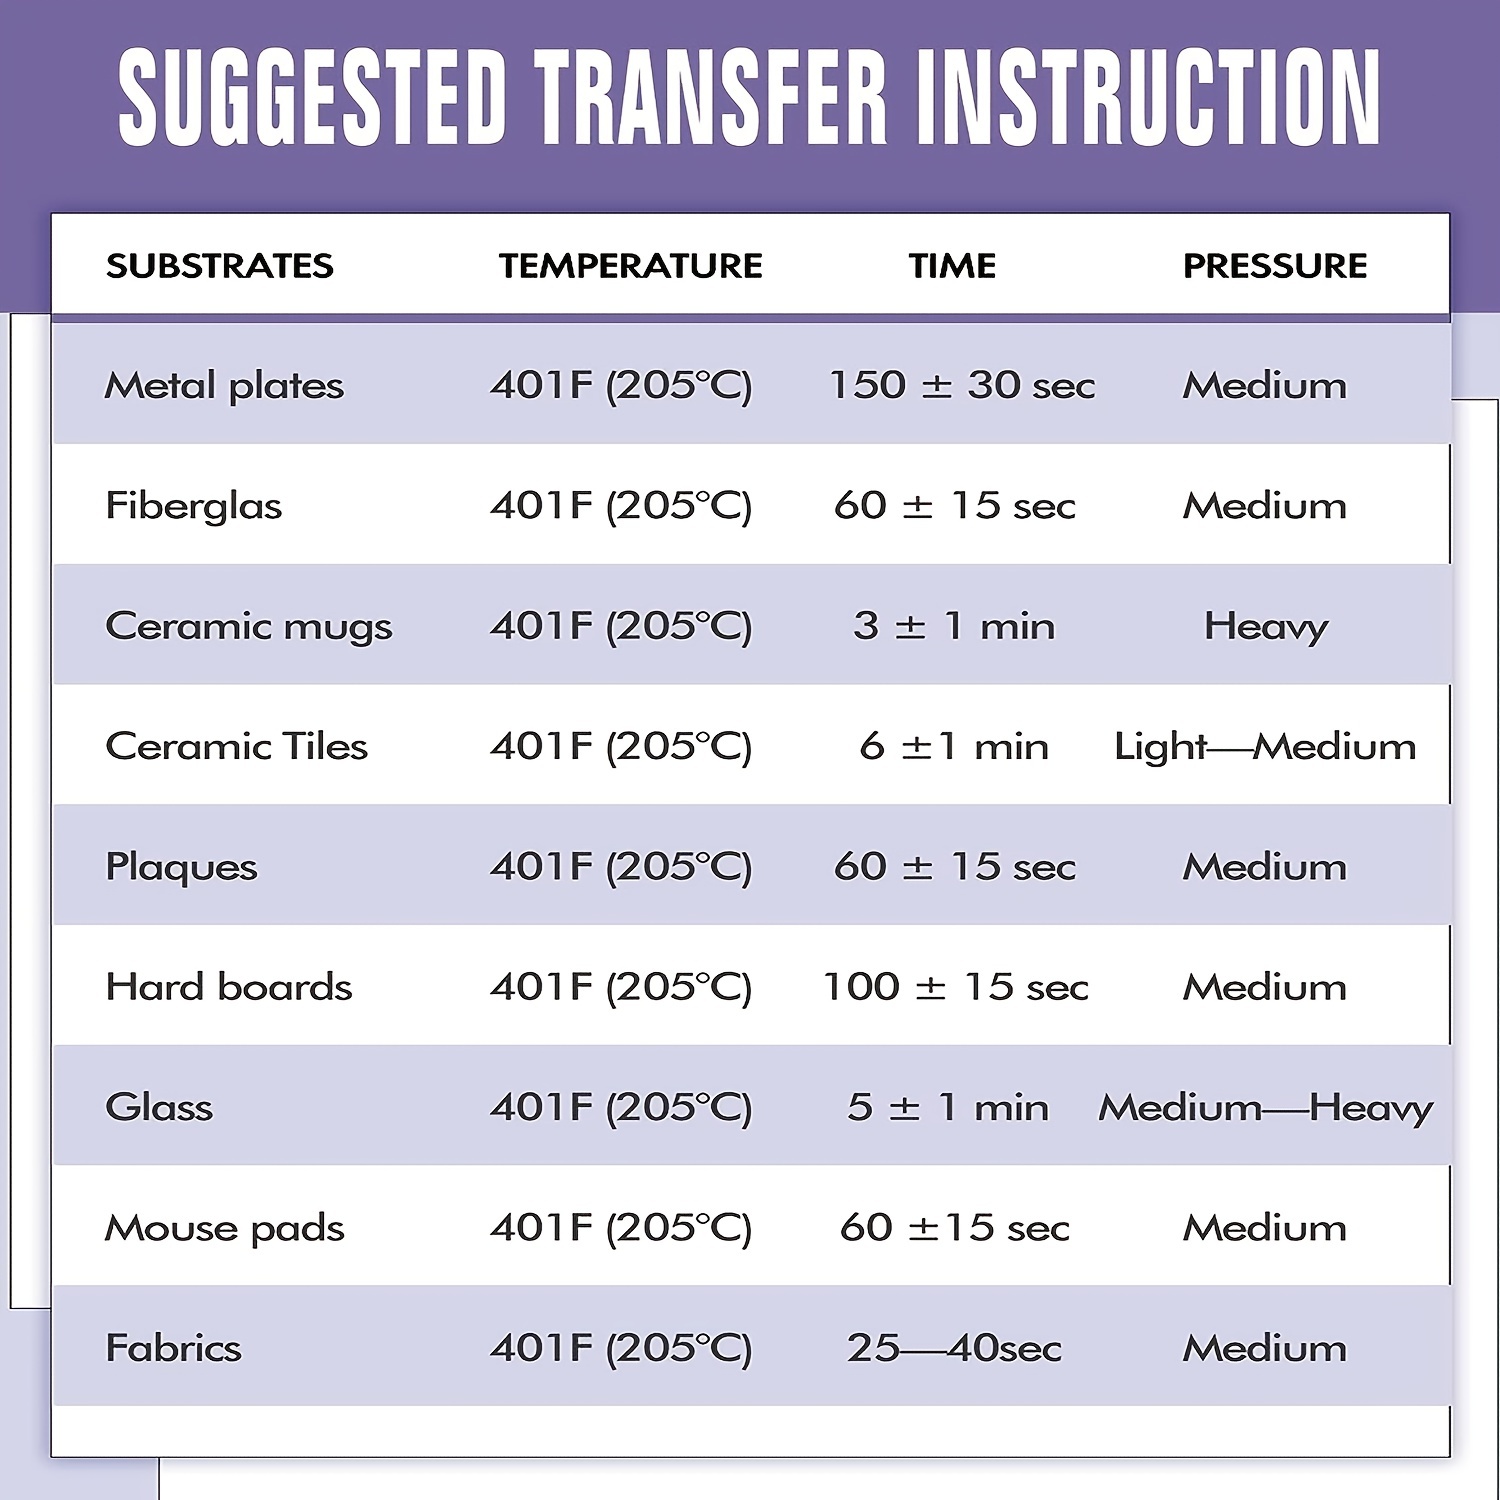 100 Sheets Sublimation Heat Transfer Paper for Inkjet Printer DIY